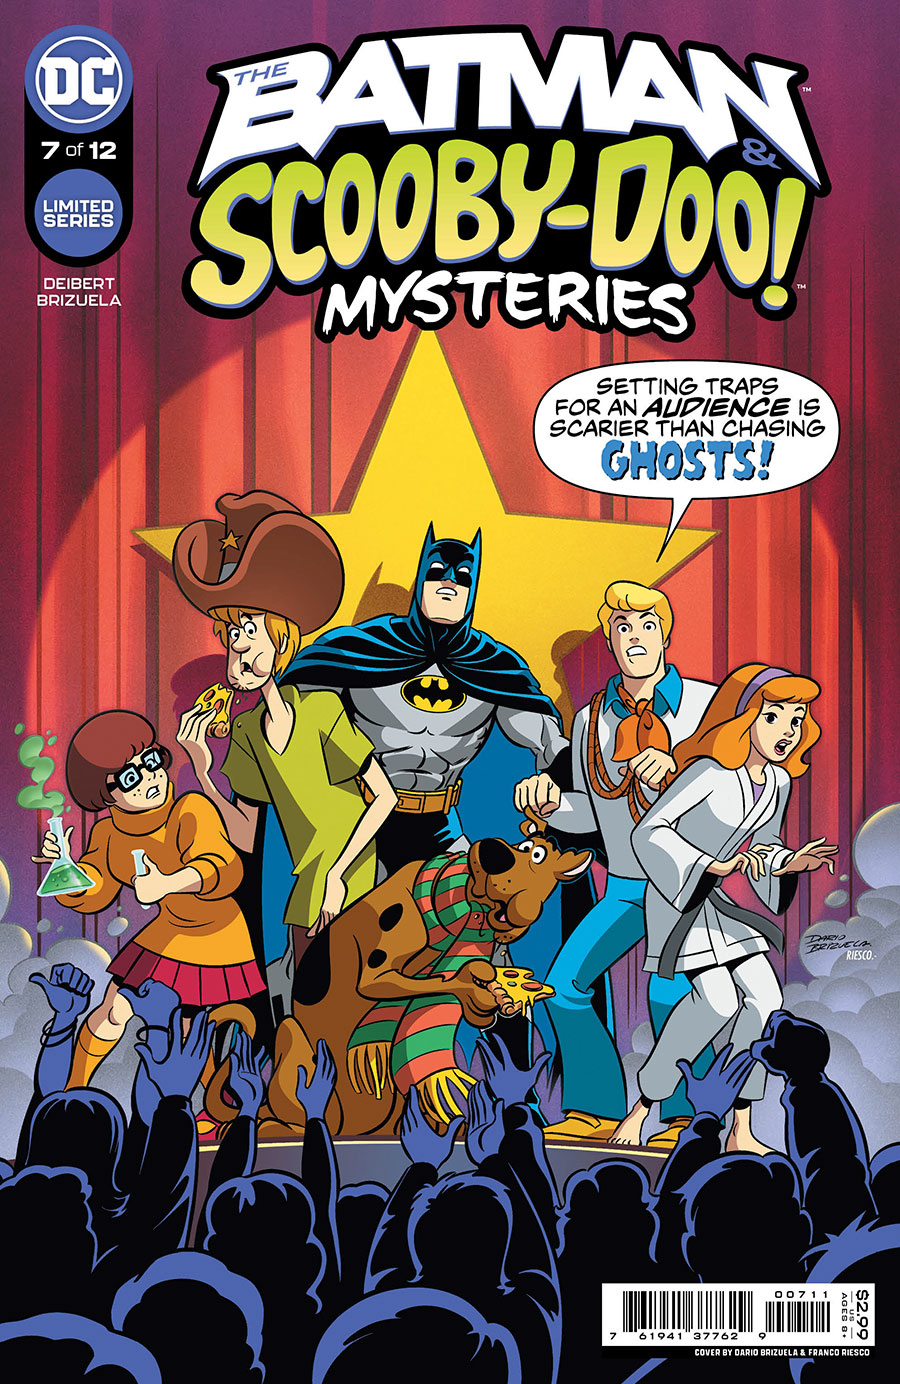 Batman & Scooby-Doo Mysteries Vol 2 #7